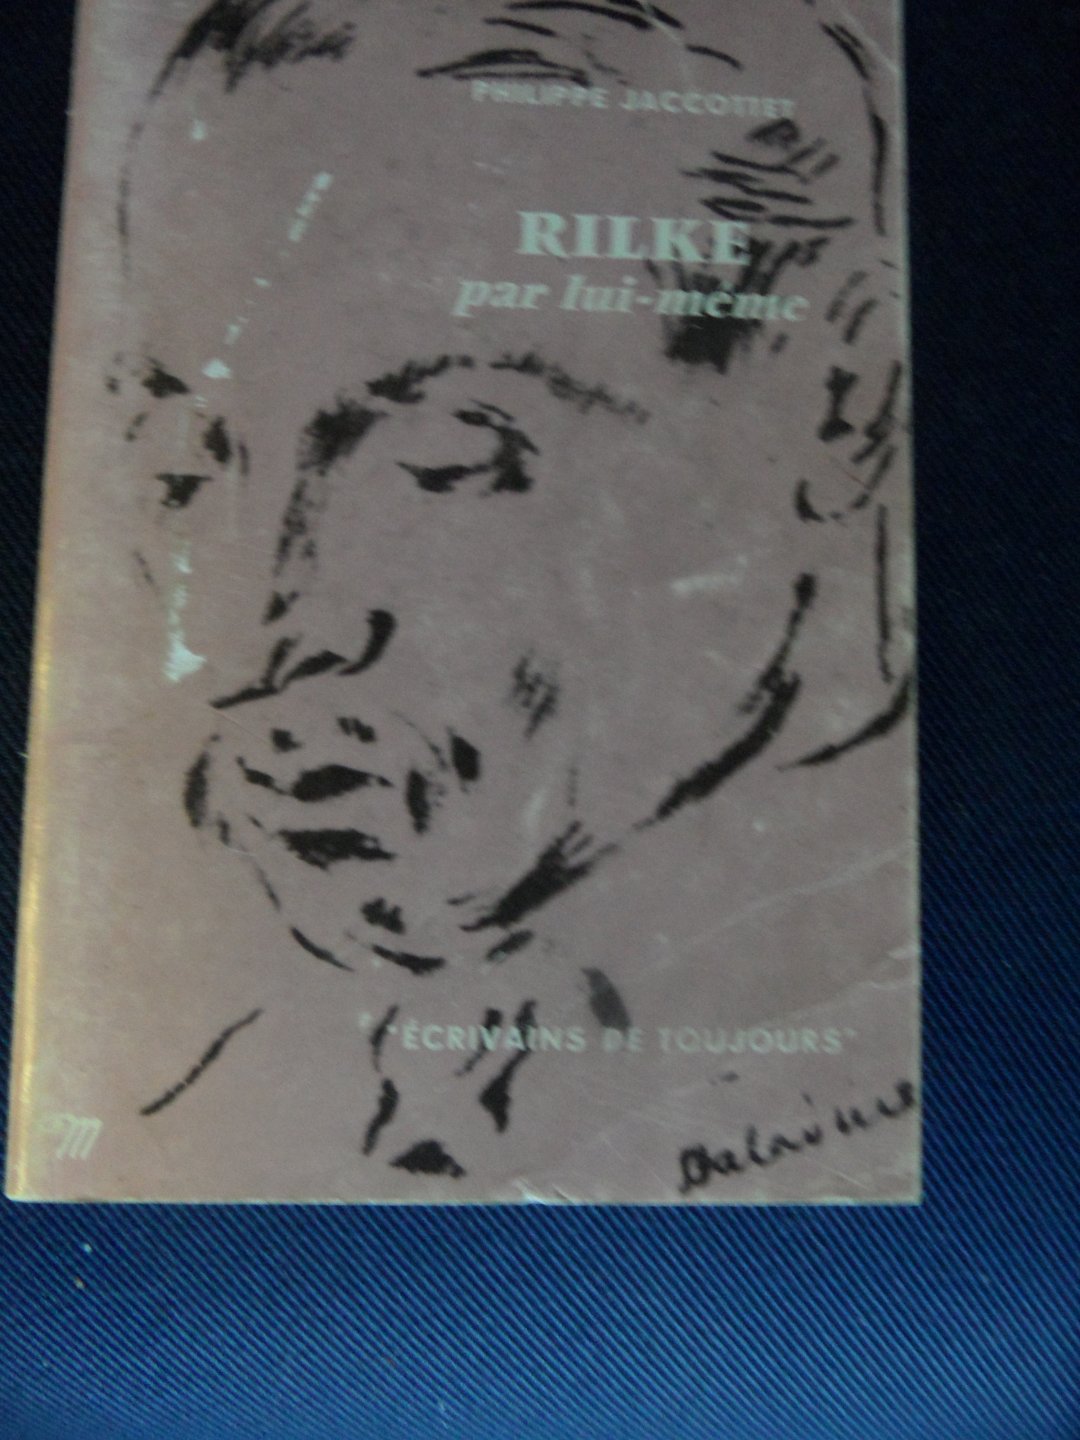 Jaccottet, Philippe - Rilke par lui-meme